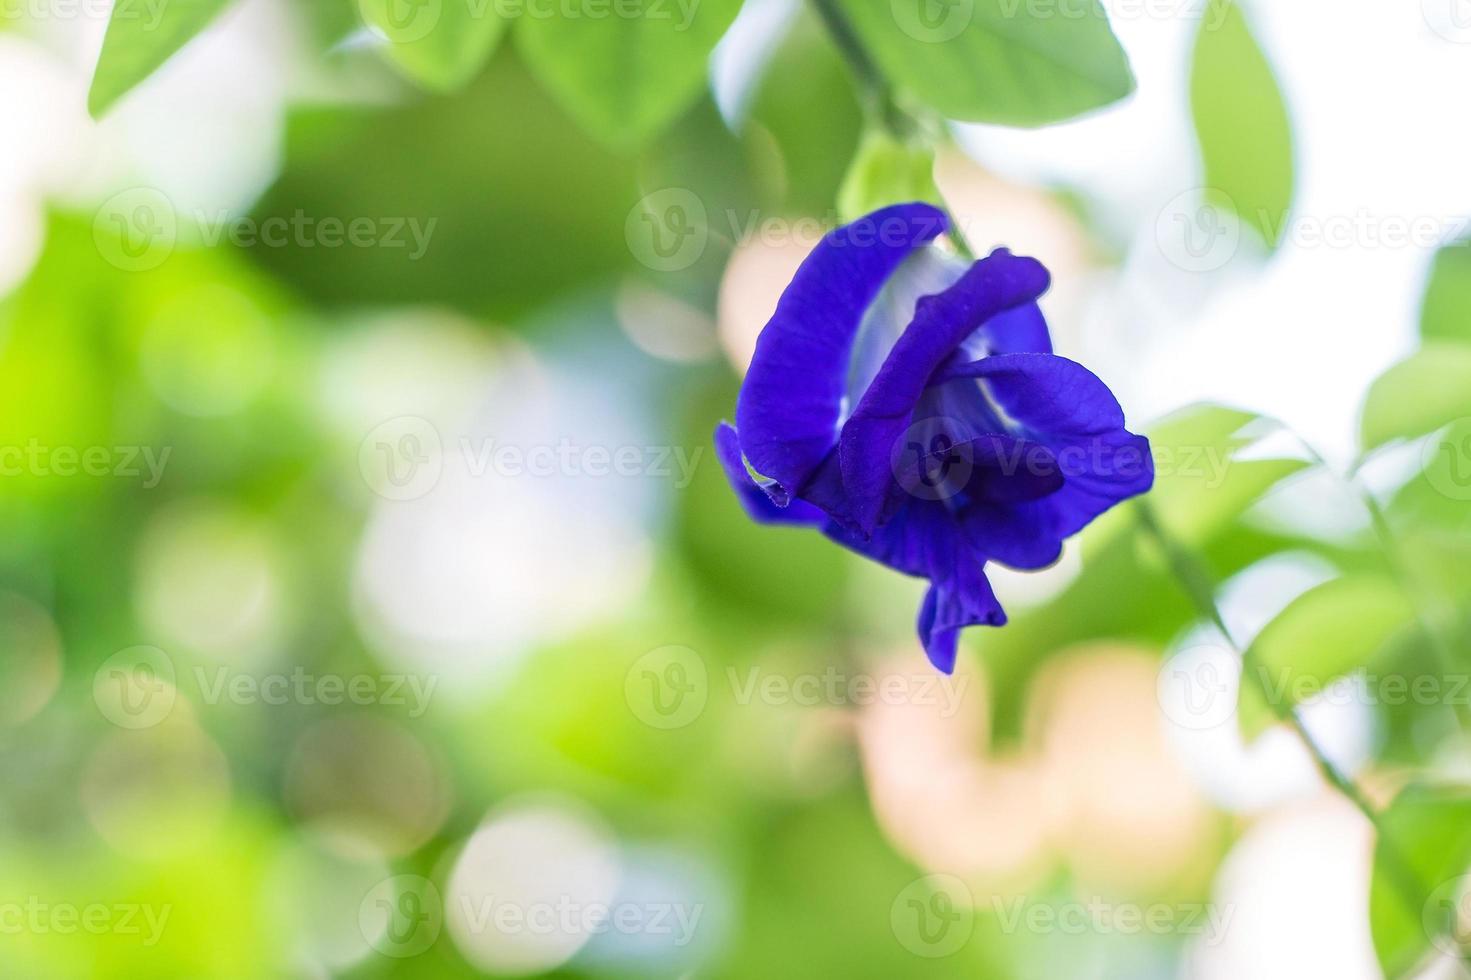 Las flores de guisante de mariposa son naturalmente hermosas flores azul-púrpura. se puede utilizar como colorante alimentario que contiene antocianina. foto